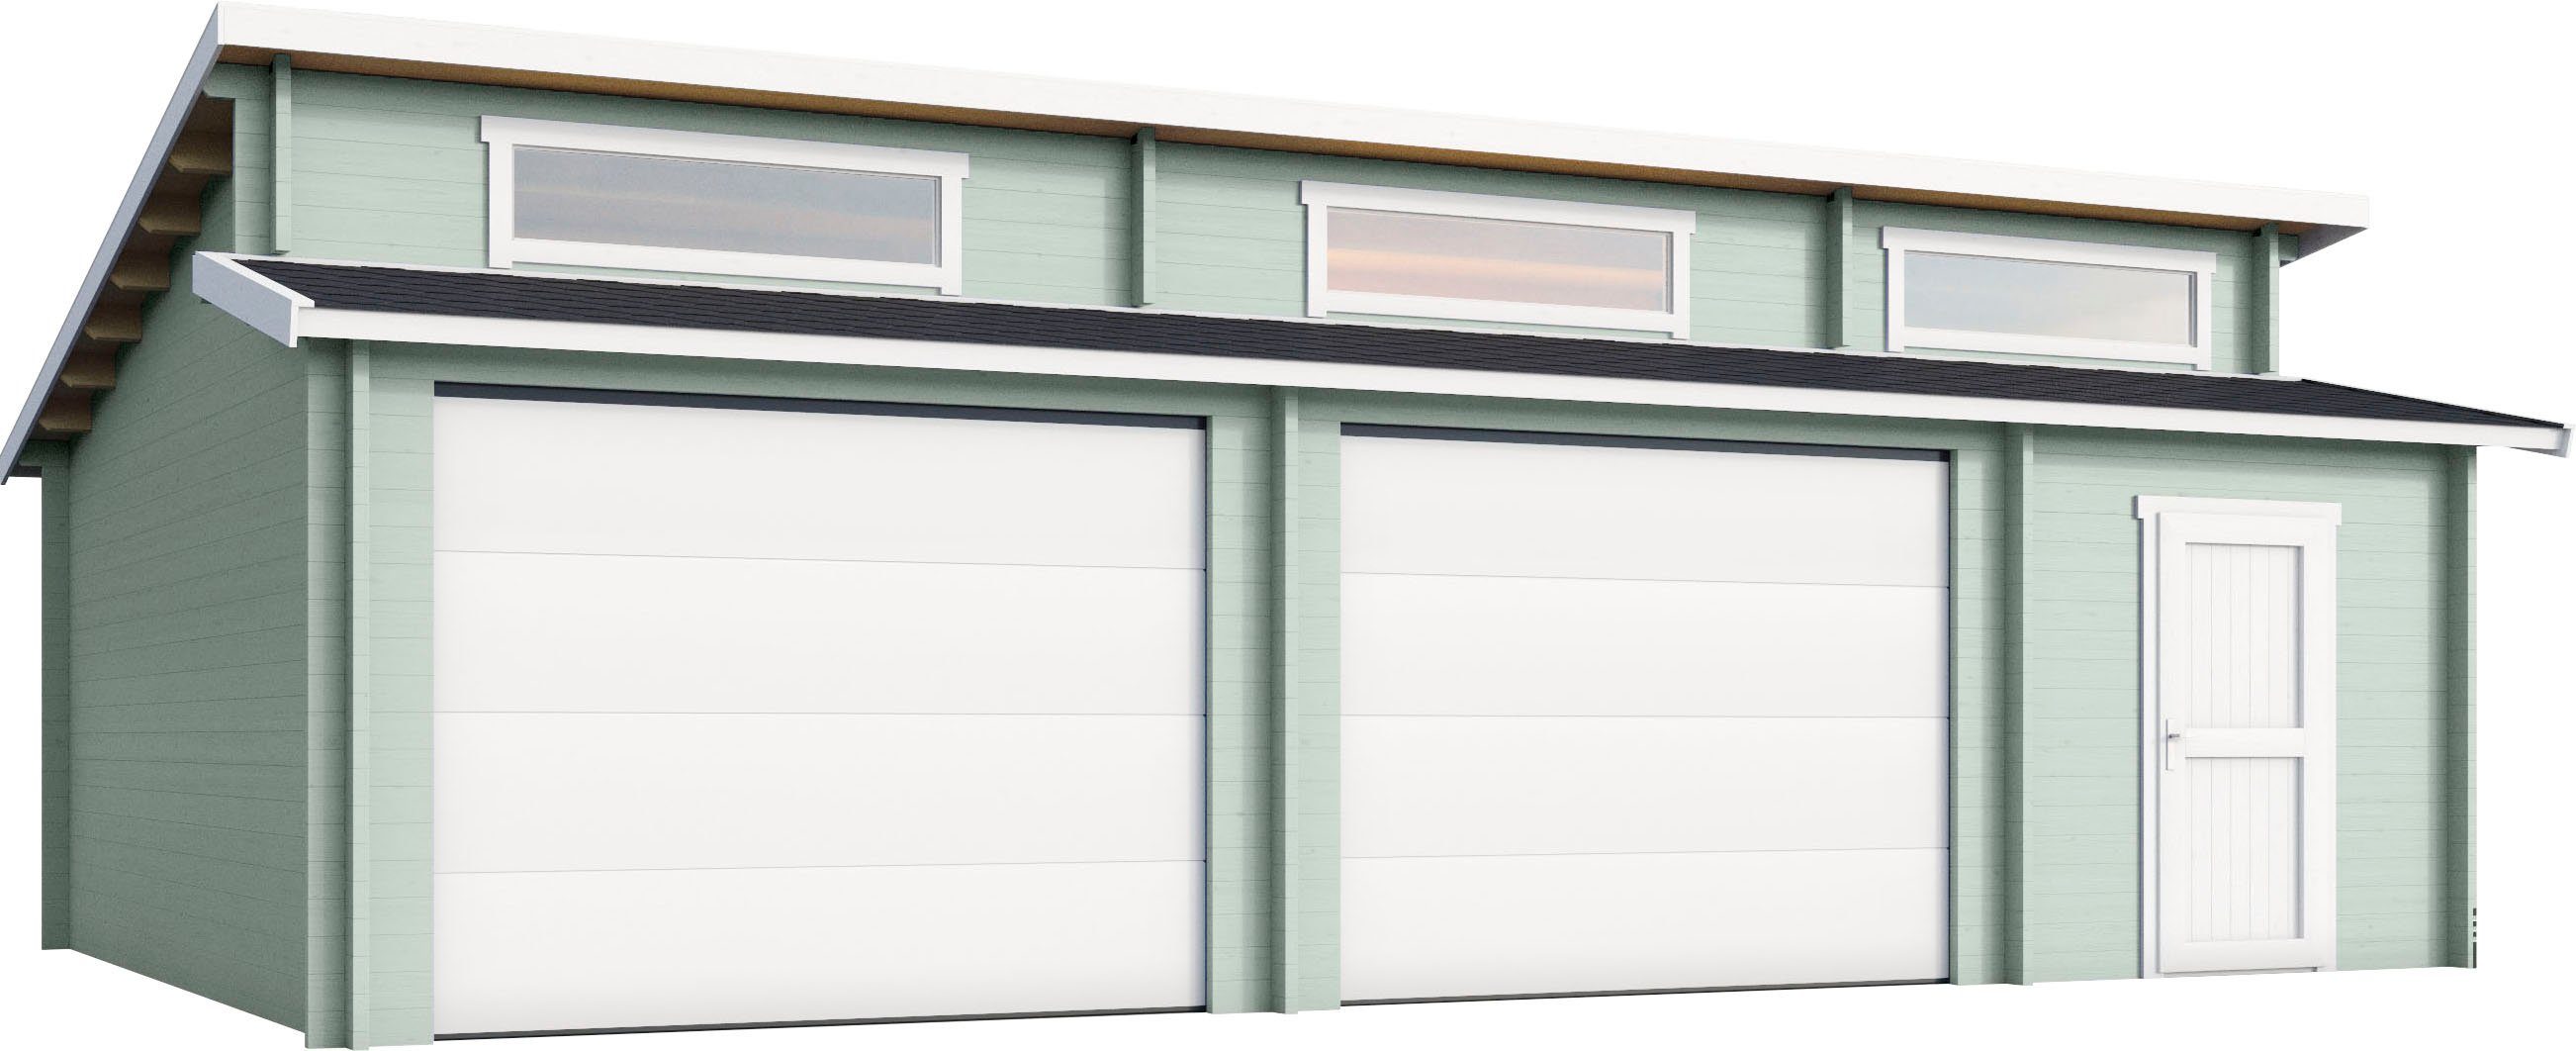 Garage Hawaii Garage + 2 Für LASITA (Set, MAJA gletschergrün 2 Fahrzeuge geeignet), Sektionaltore